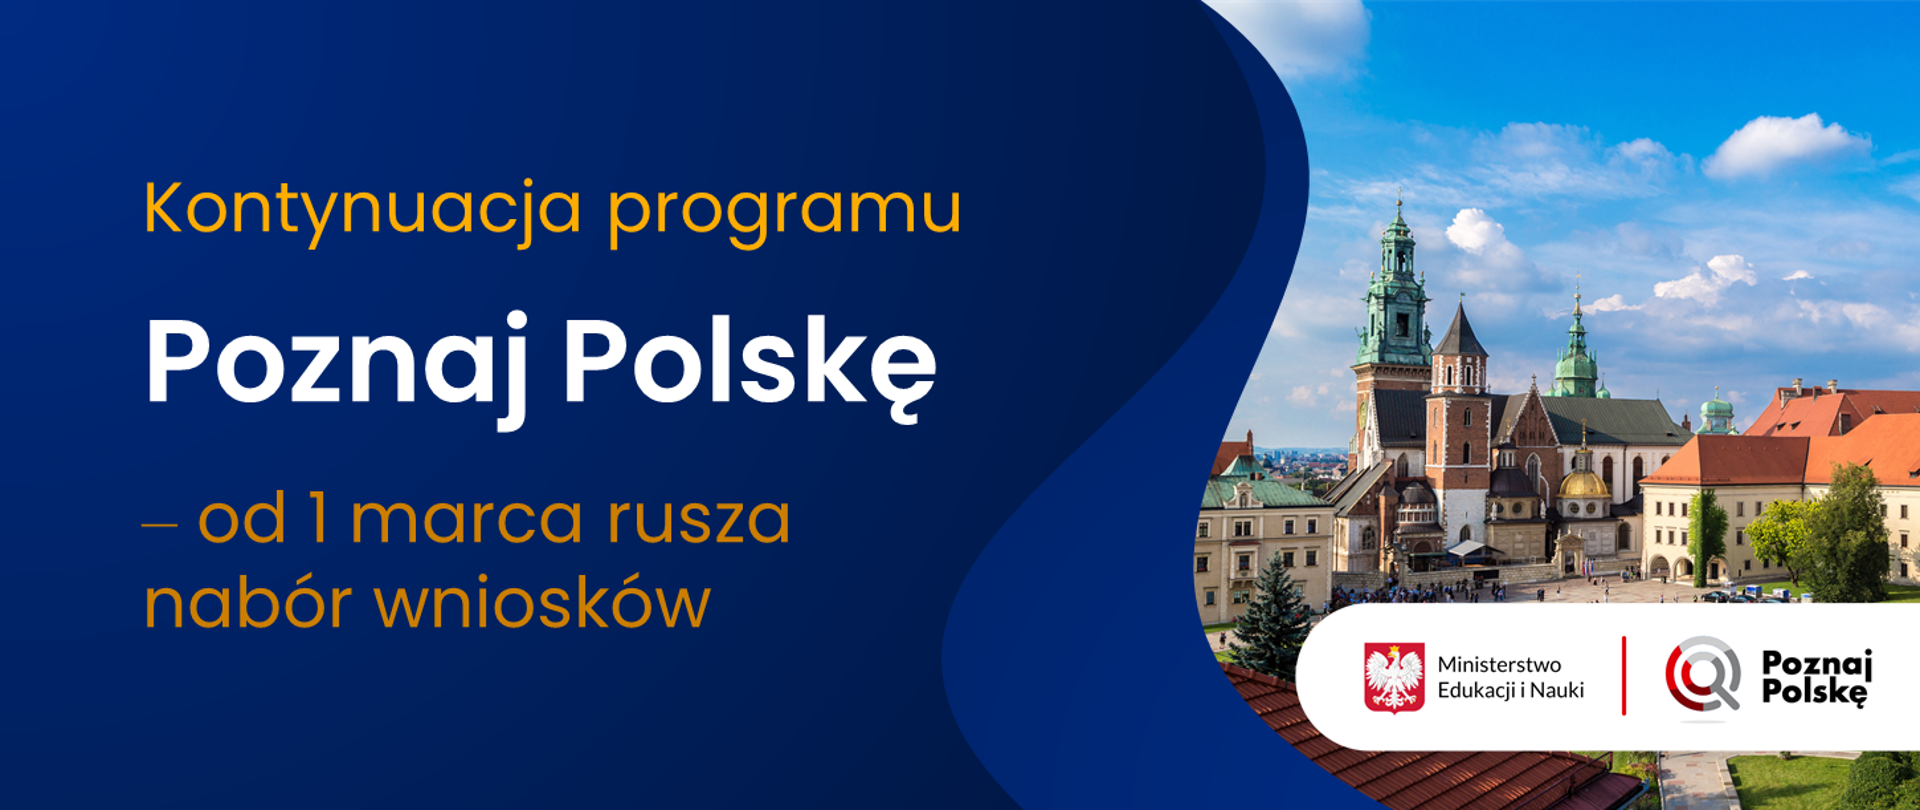 Zamek Królewski na Wawelu i napis: "Kontynuacja programu "Poznaj Polskę" ‒ od 1 marca rusza nabór wniosków"